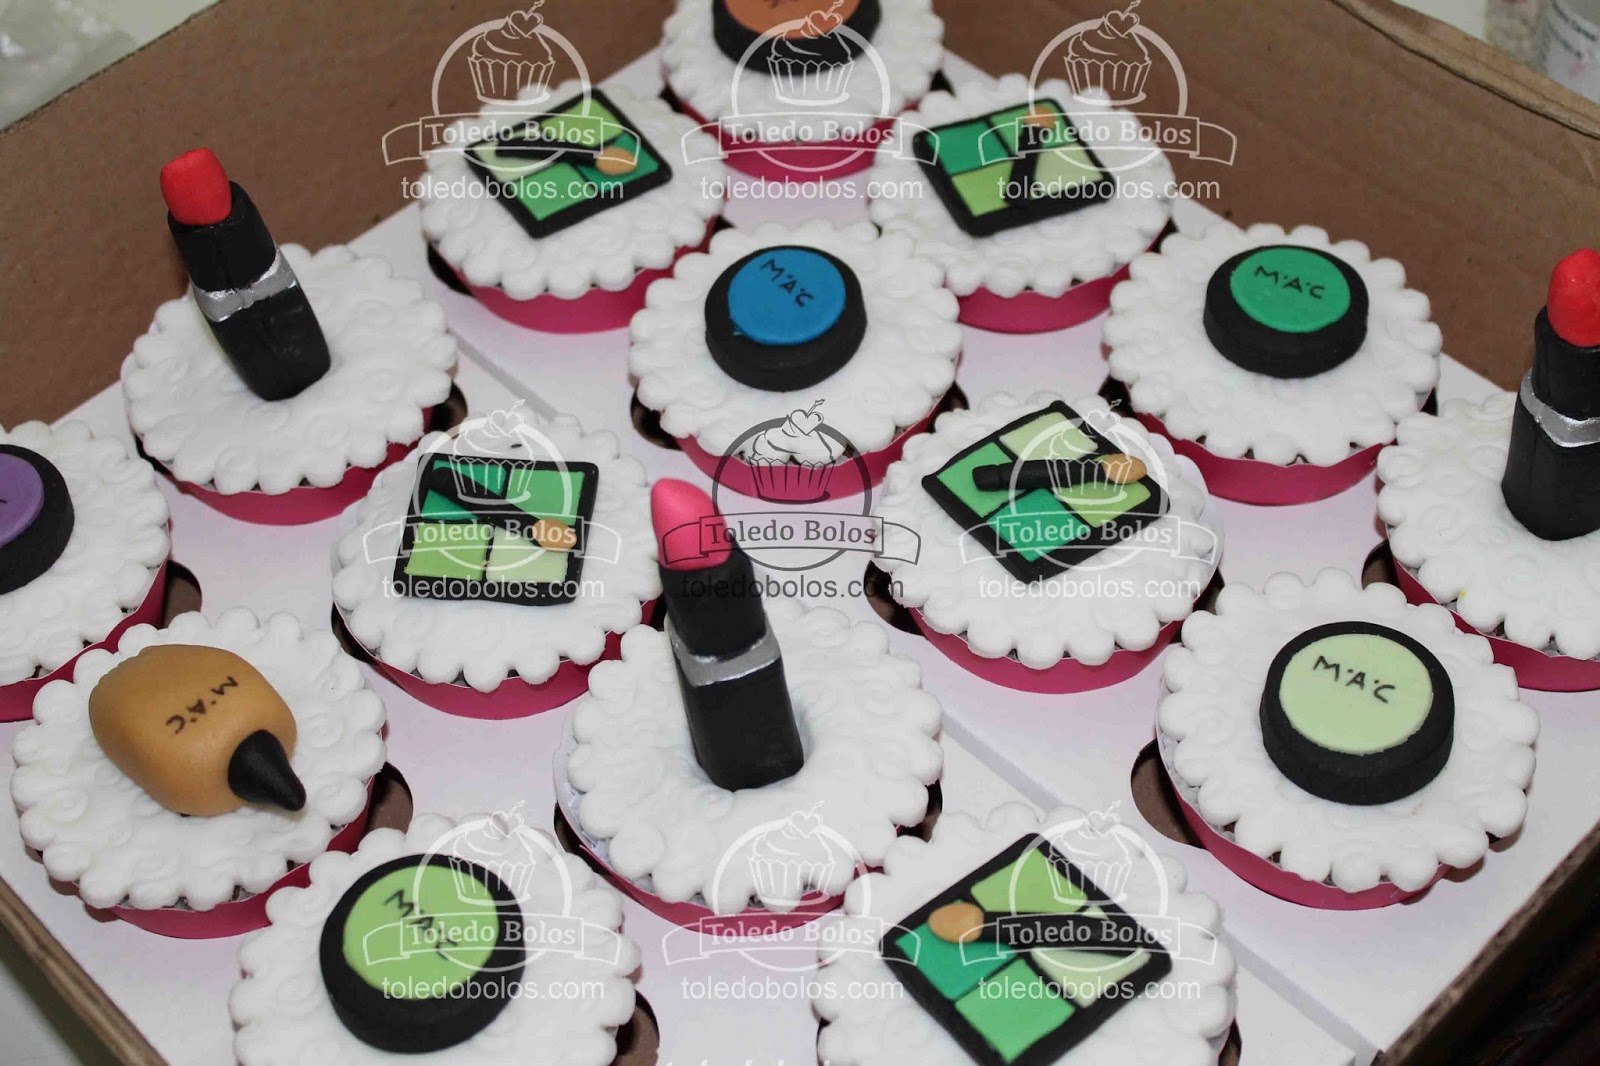 Toledo Bolos - Bolos decorados, Cupcakes e Doces personalizados para sua  festa no Rio de Janeiro: Bolo Minecraft